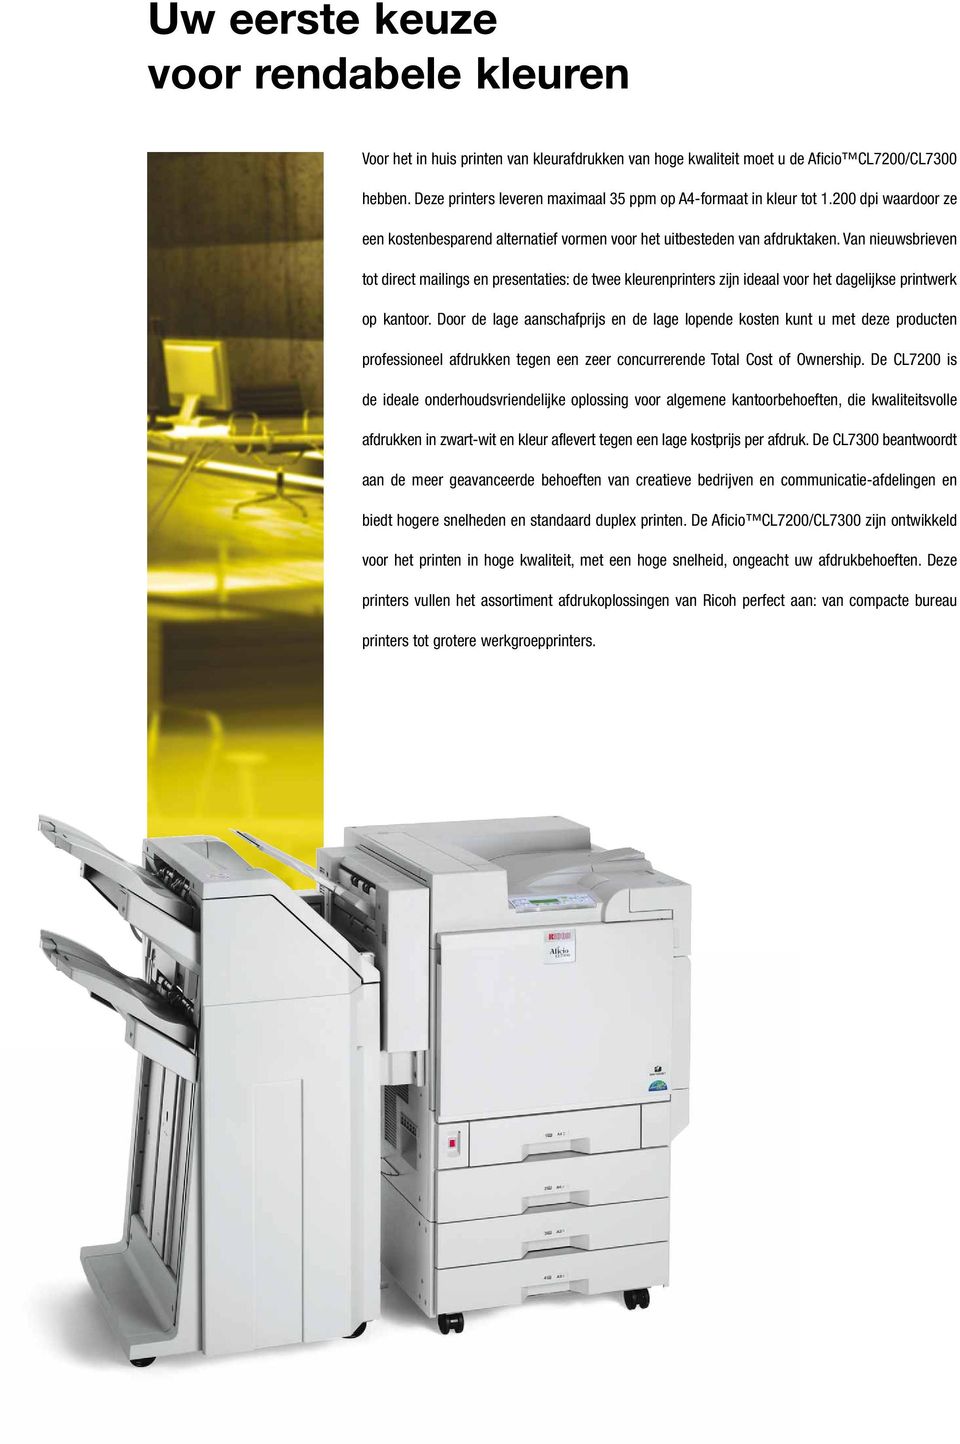 Van nieuwsbrieven tot direct mailings en presentaties: de twee kleurenprinters zijn ideaal voor het dagelijkse printwerk op kantoor.